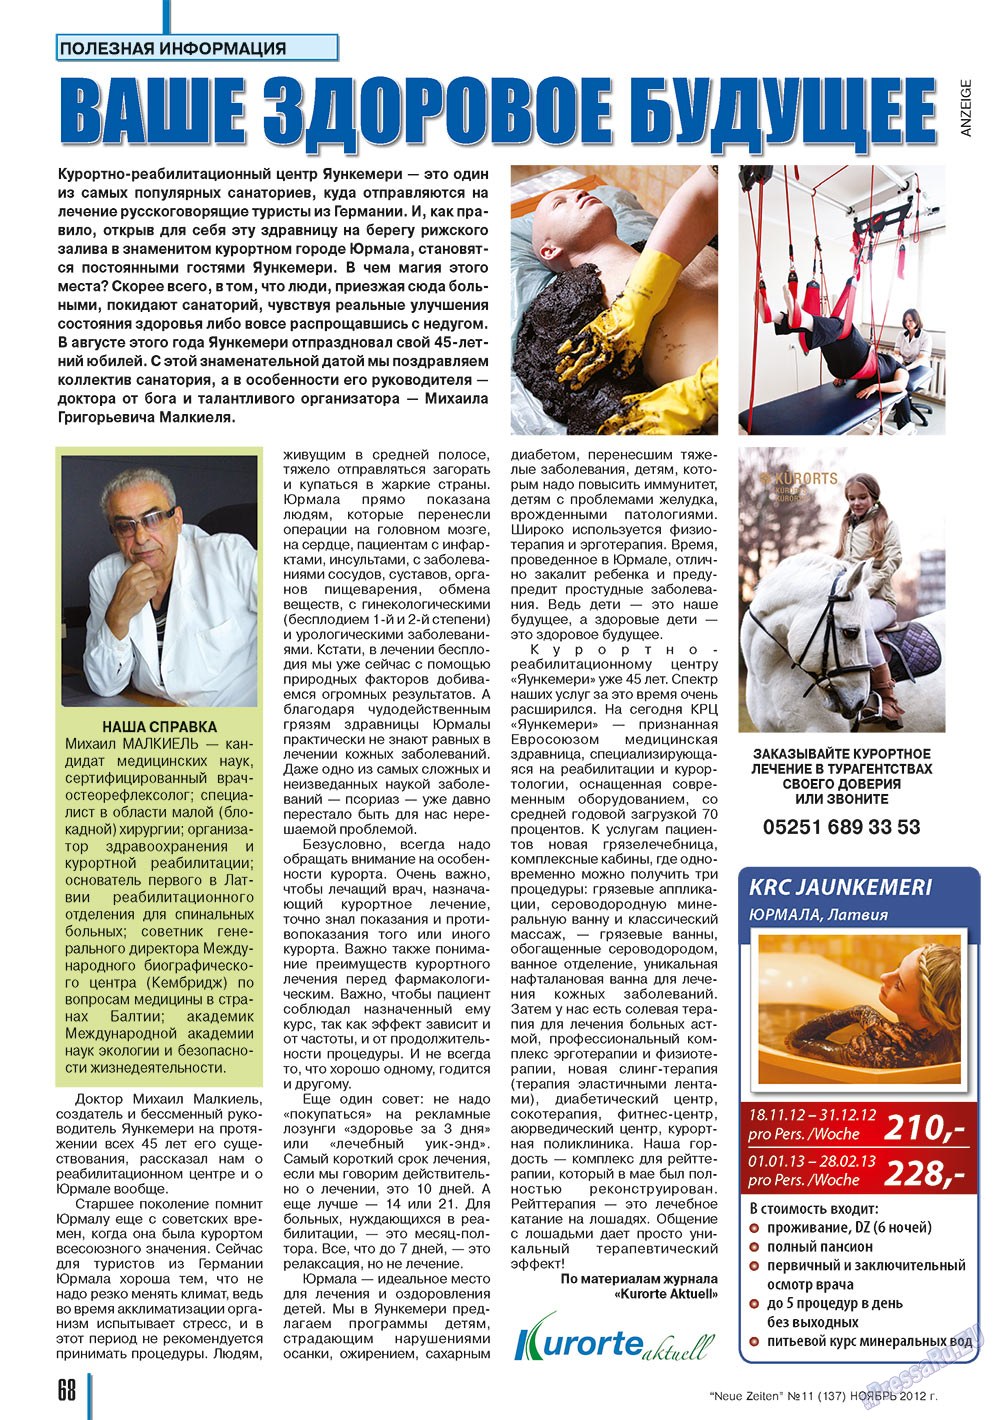 Neue Zeiten, журнал. 2012 №11 стр.68